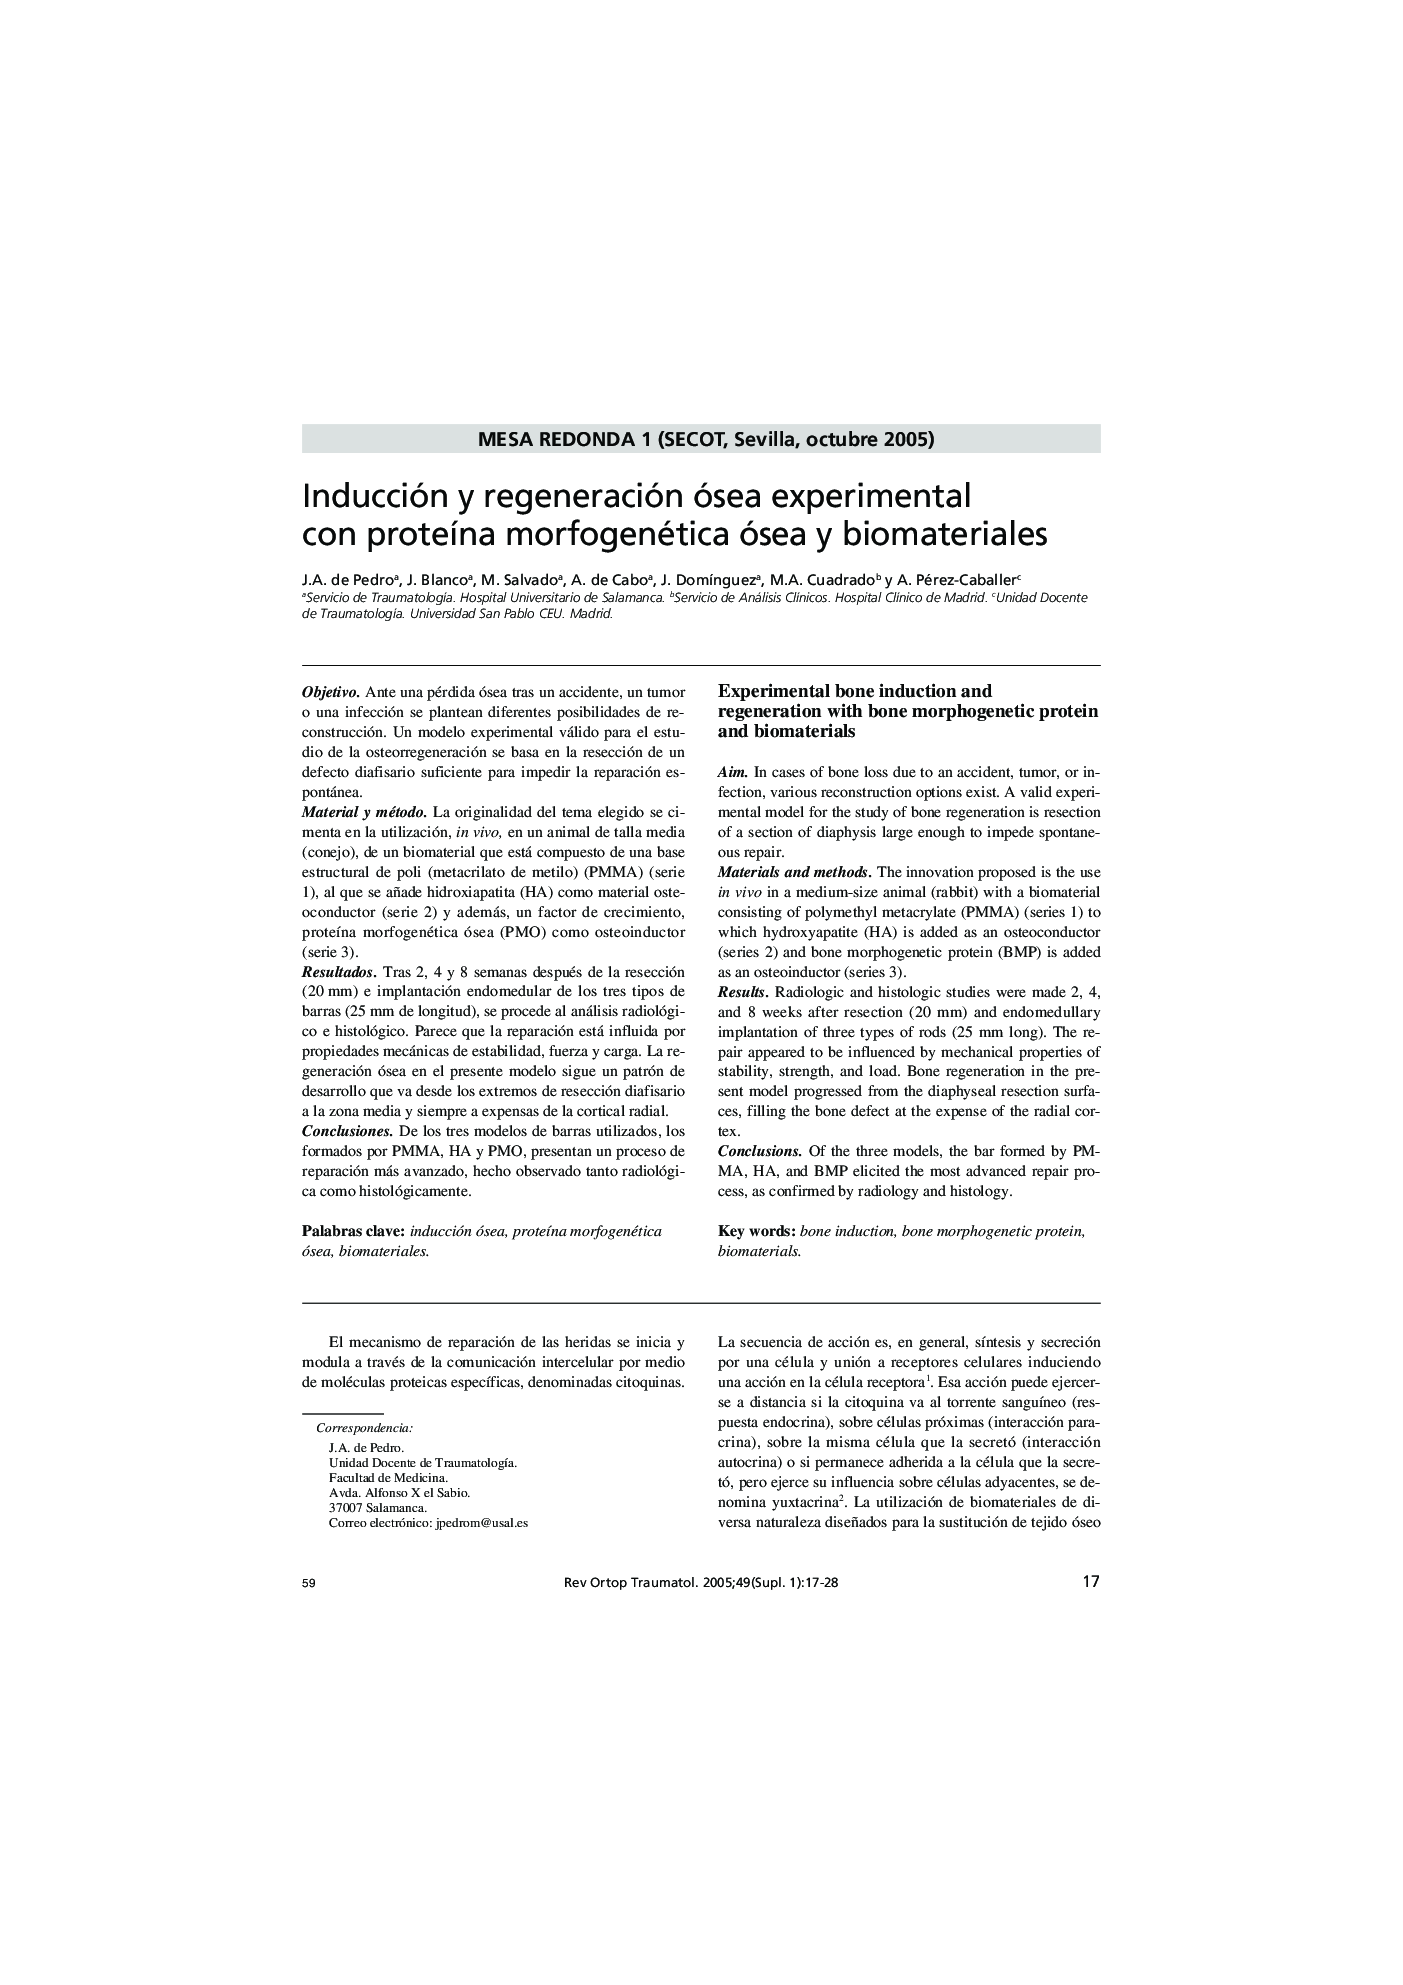 Inducción y regeneración ósea experimental con proteÃ­na morfogenética ósea y biomateriales